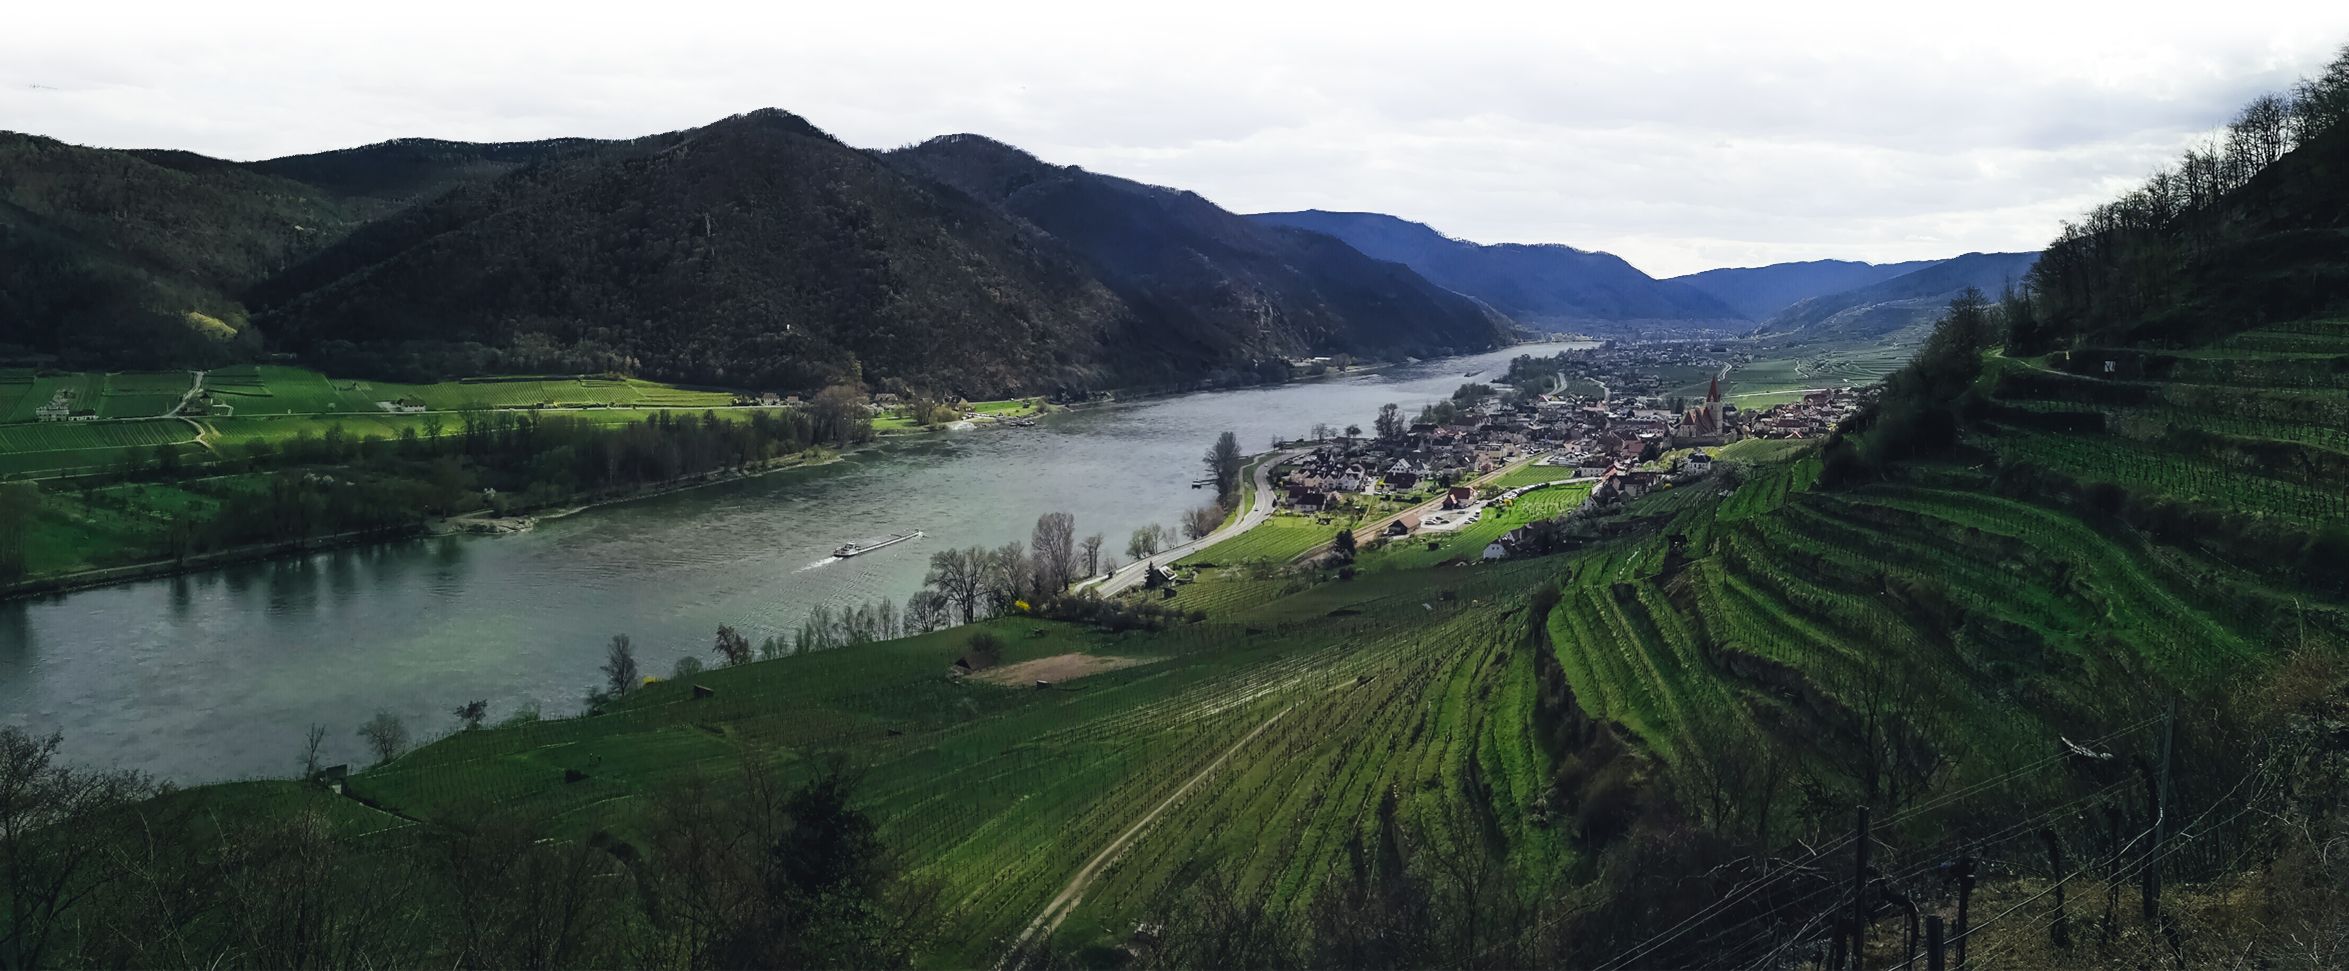 Vineyards of Wachau and Weissenkirchen in Austria